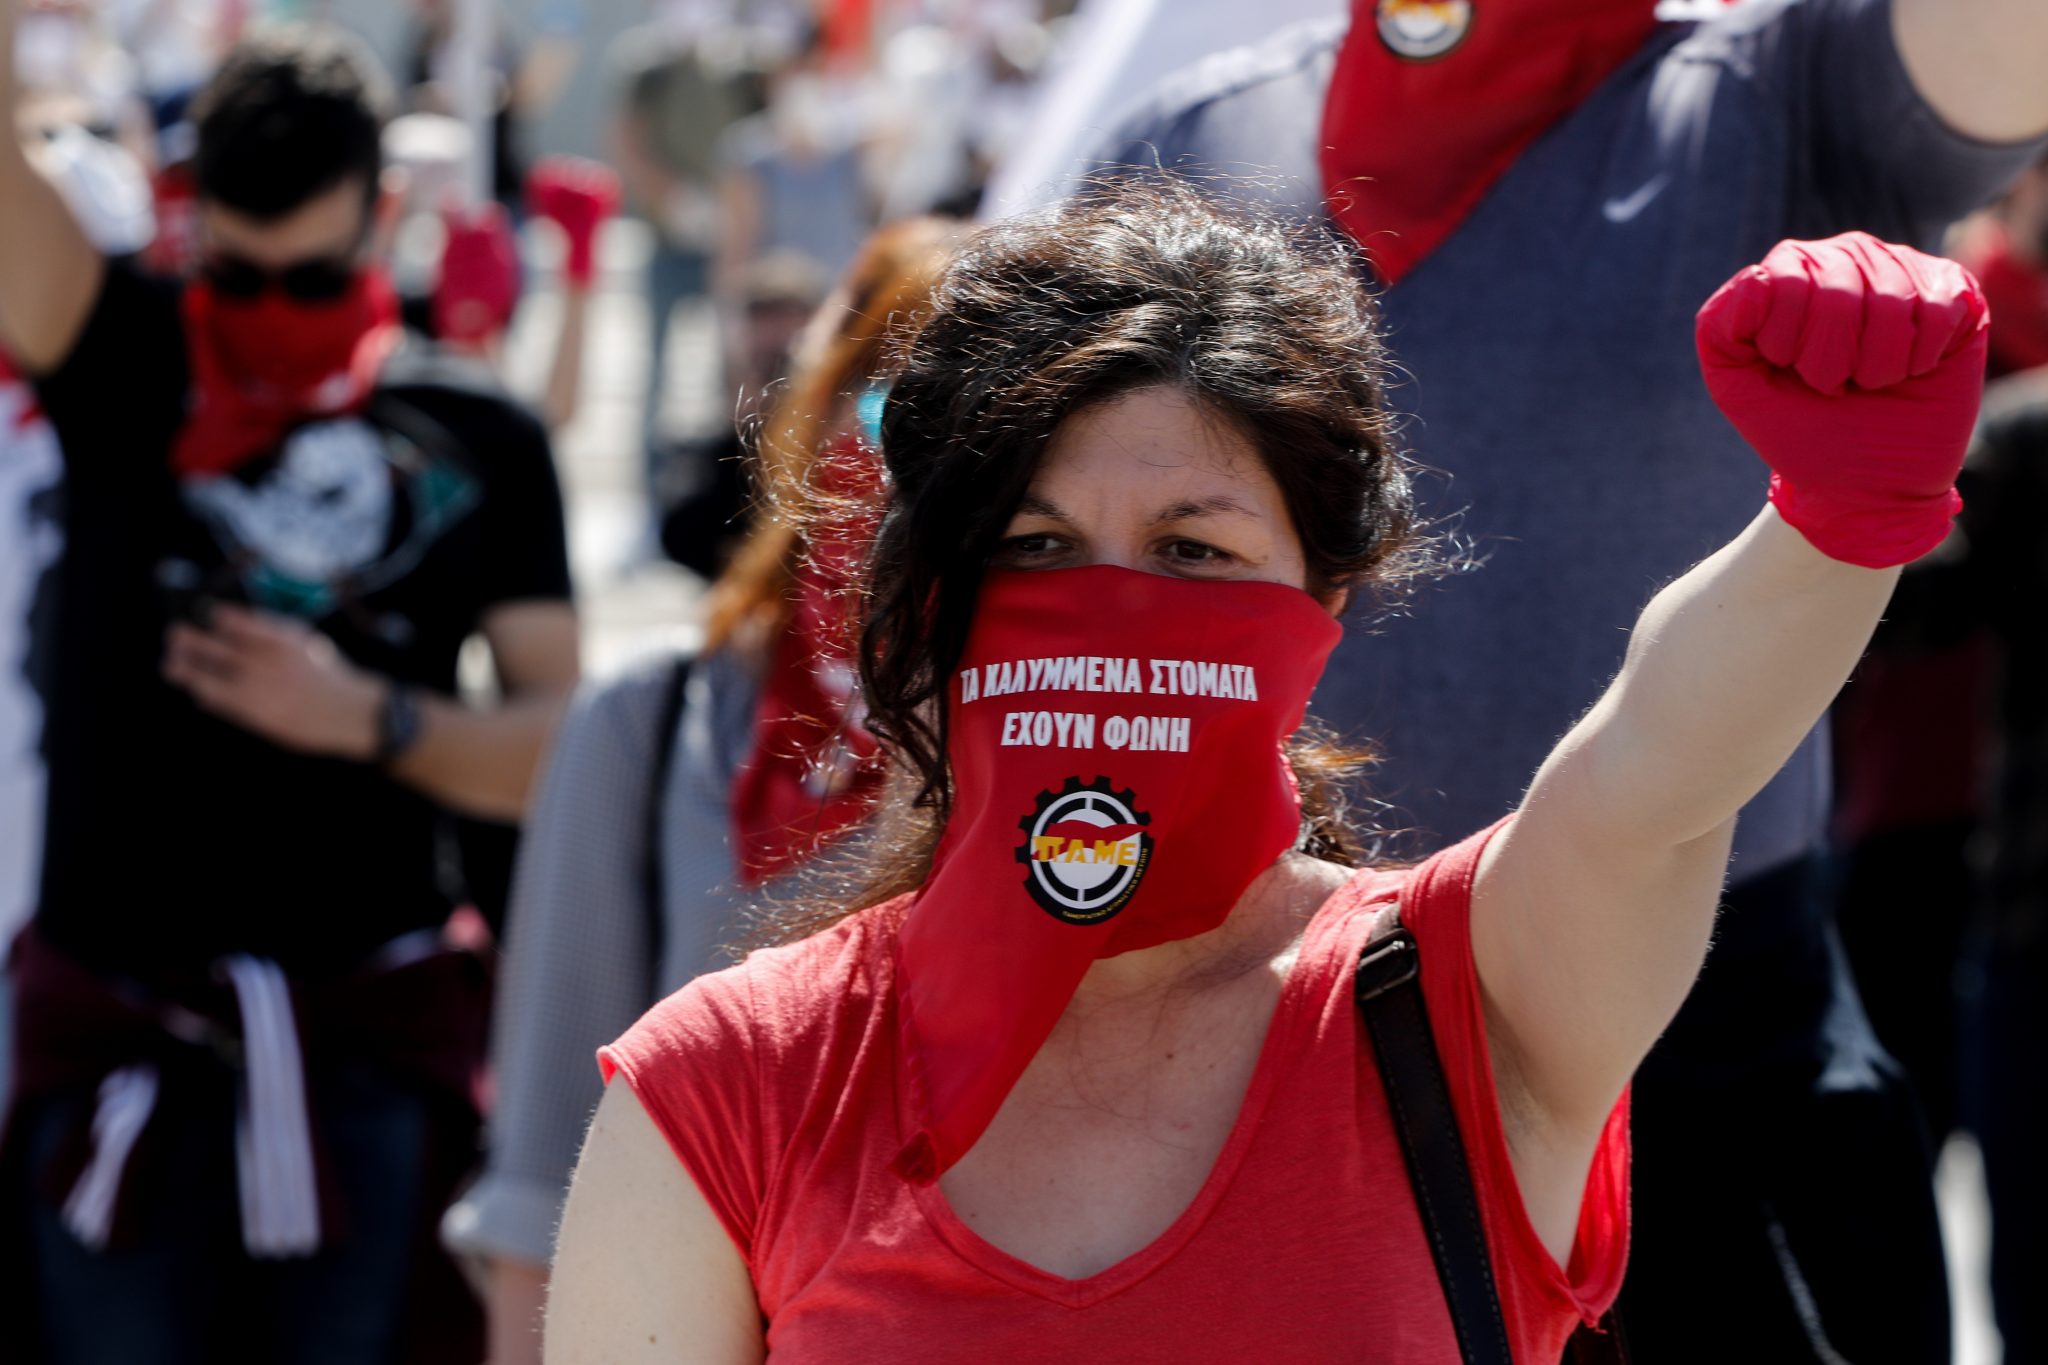 Πρωτομαγιά: Με μάσκες και αποστάσεις οι συγκεντρώσεις του ΠΑΜΕ στο Σύνταγμα